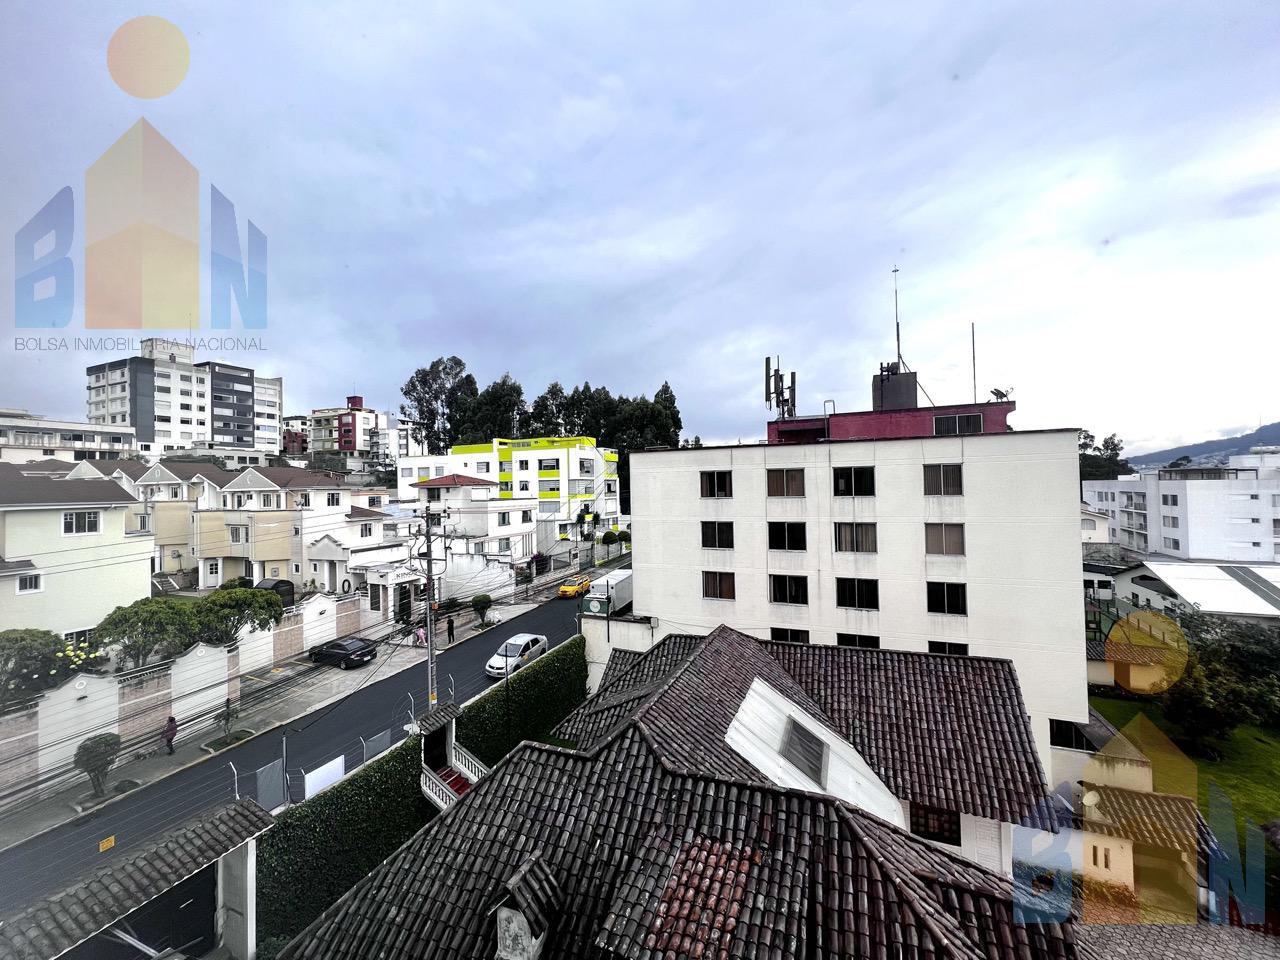 Suite en venta sector Ponceano   Quito Por estrenar edificio de lujo